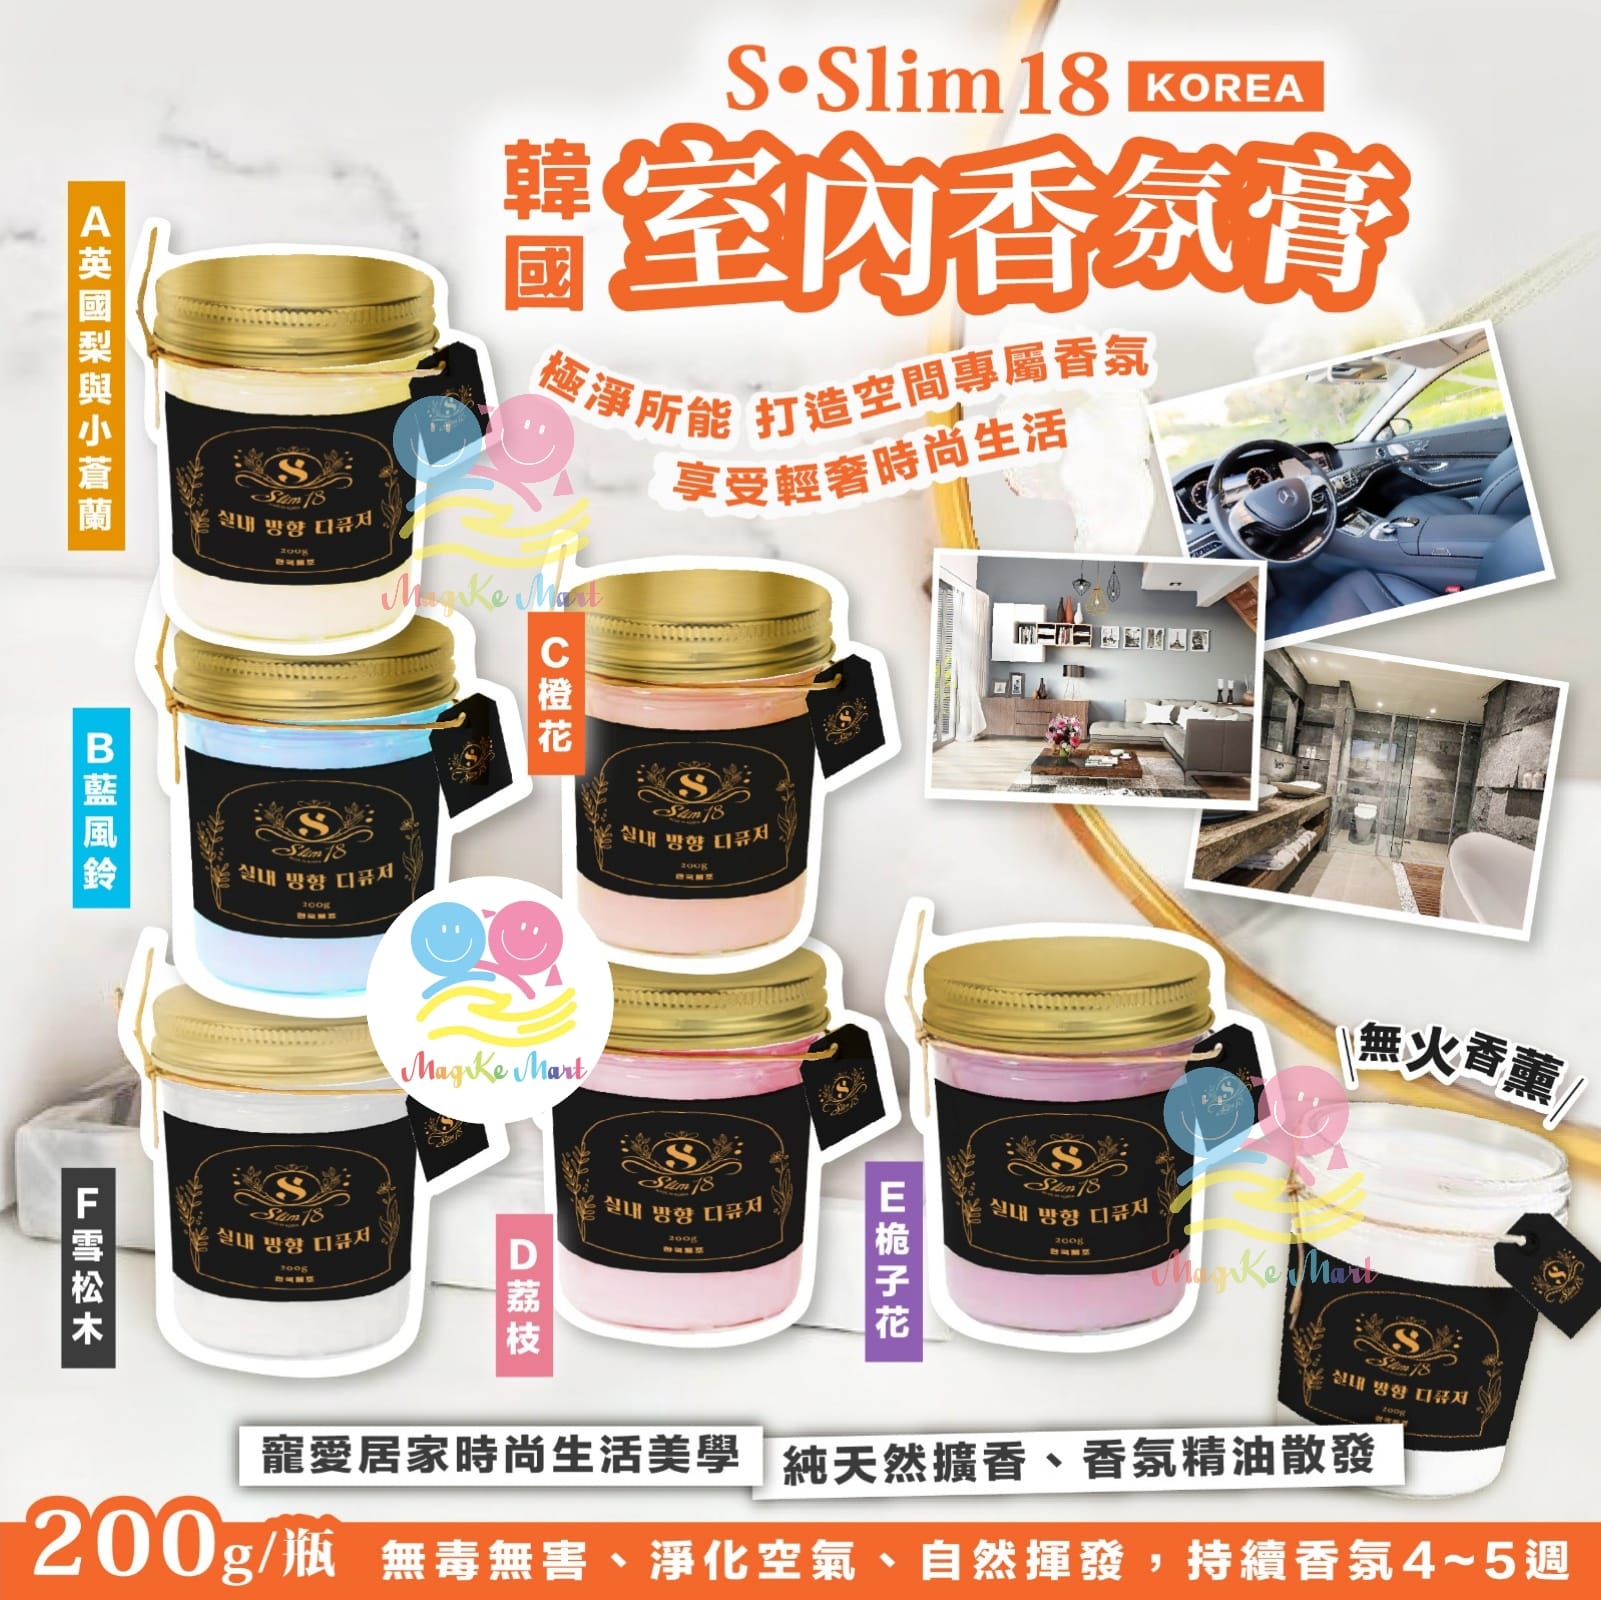 韓國 S•Slim18 室內香氛膏系列 200g (1套3個同味) (B) 藍風鈴